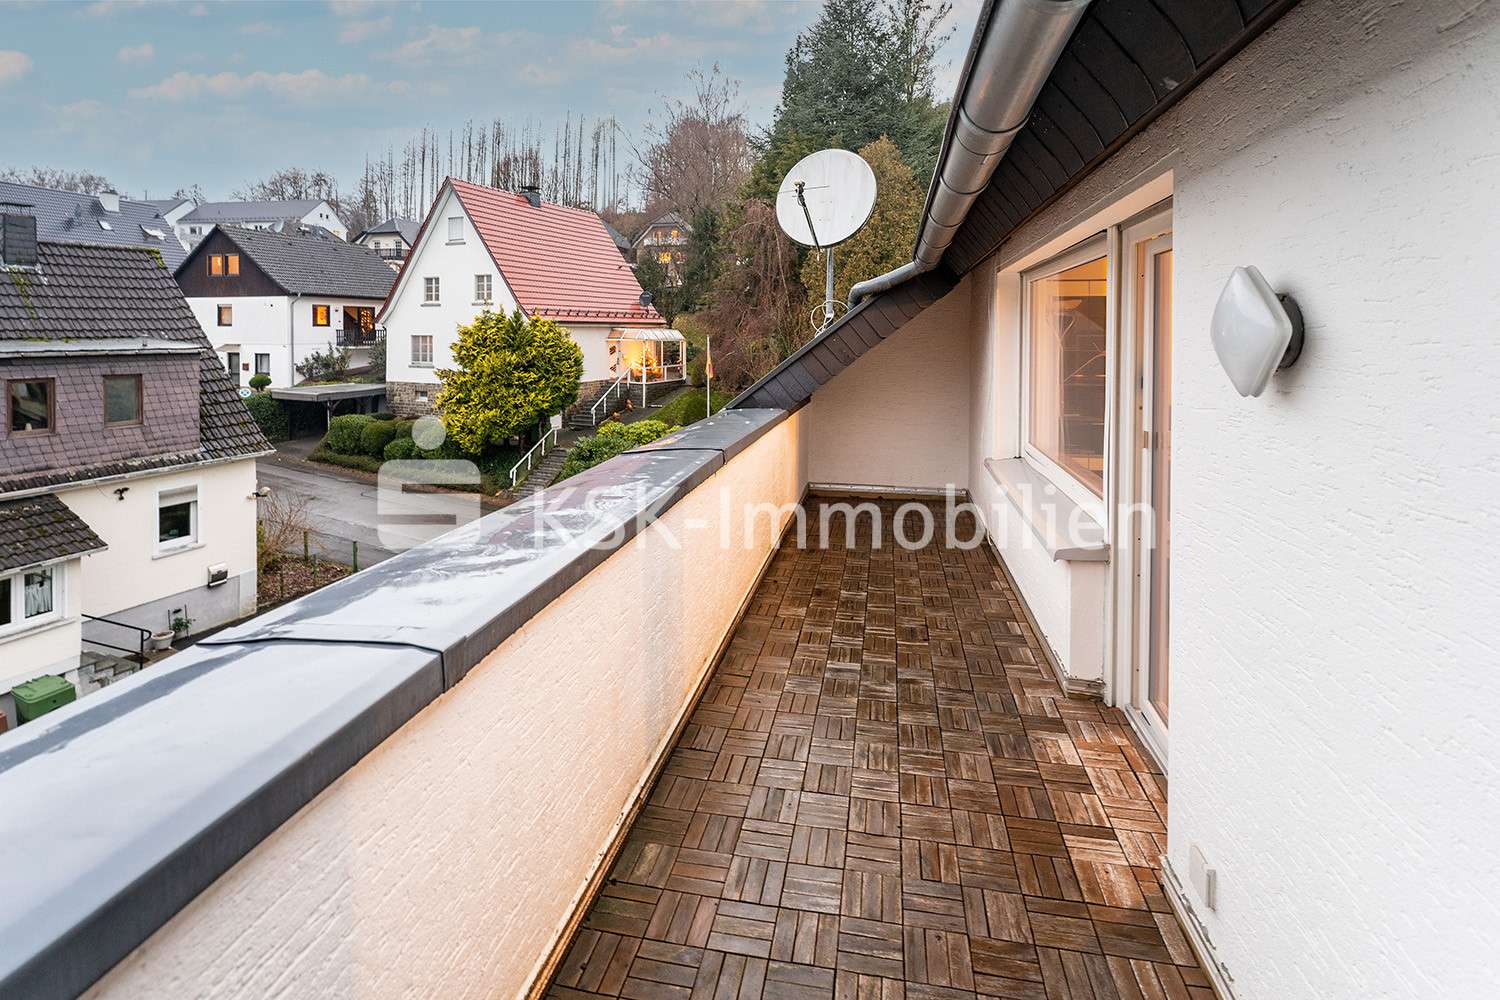 123355 Balkon - Maisonette-Wohnung in 51645 Gummersbach mit 107m² mieten